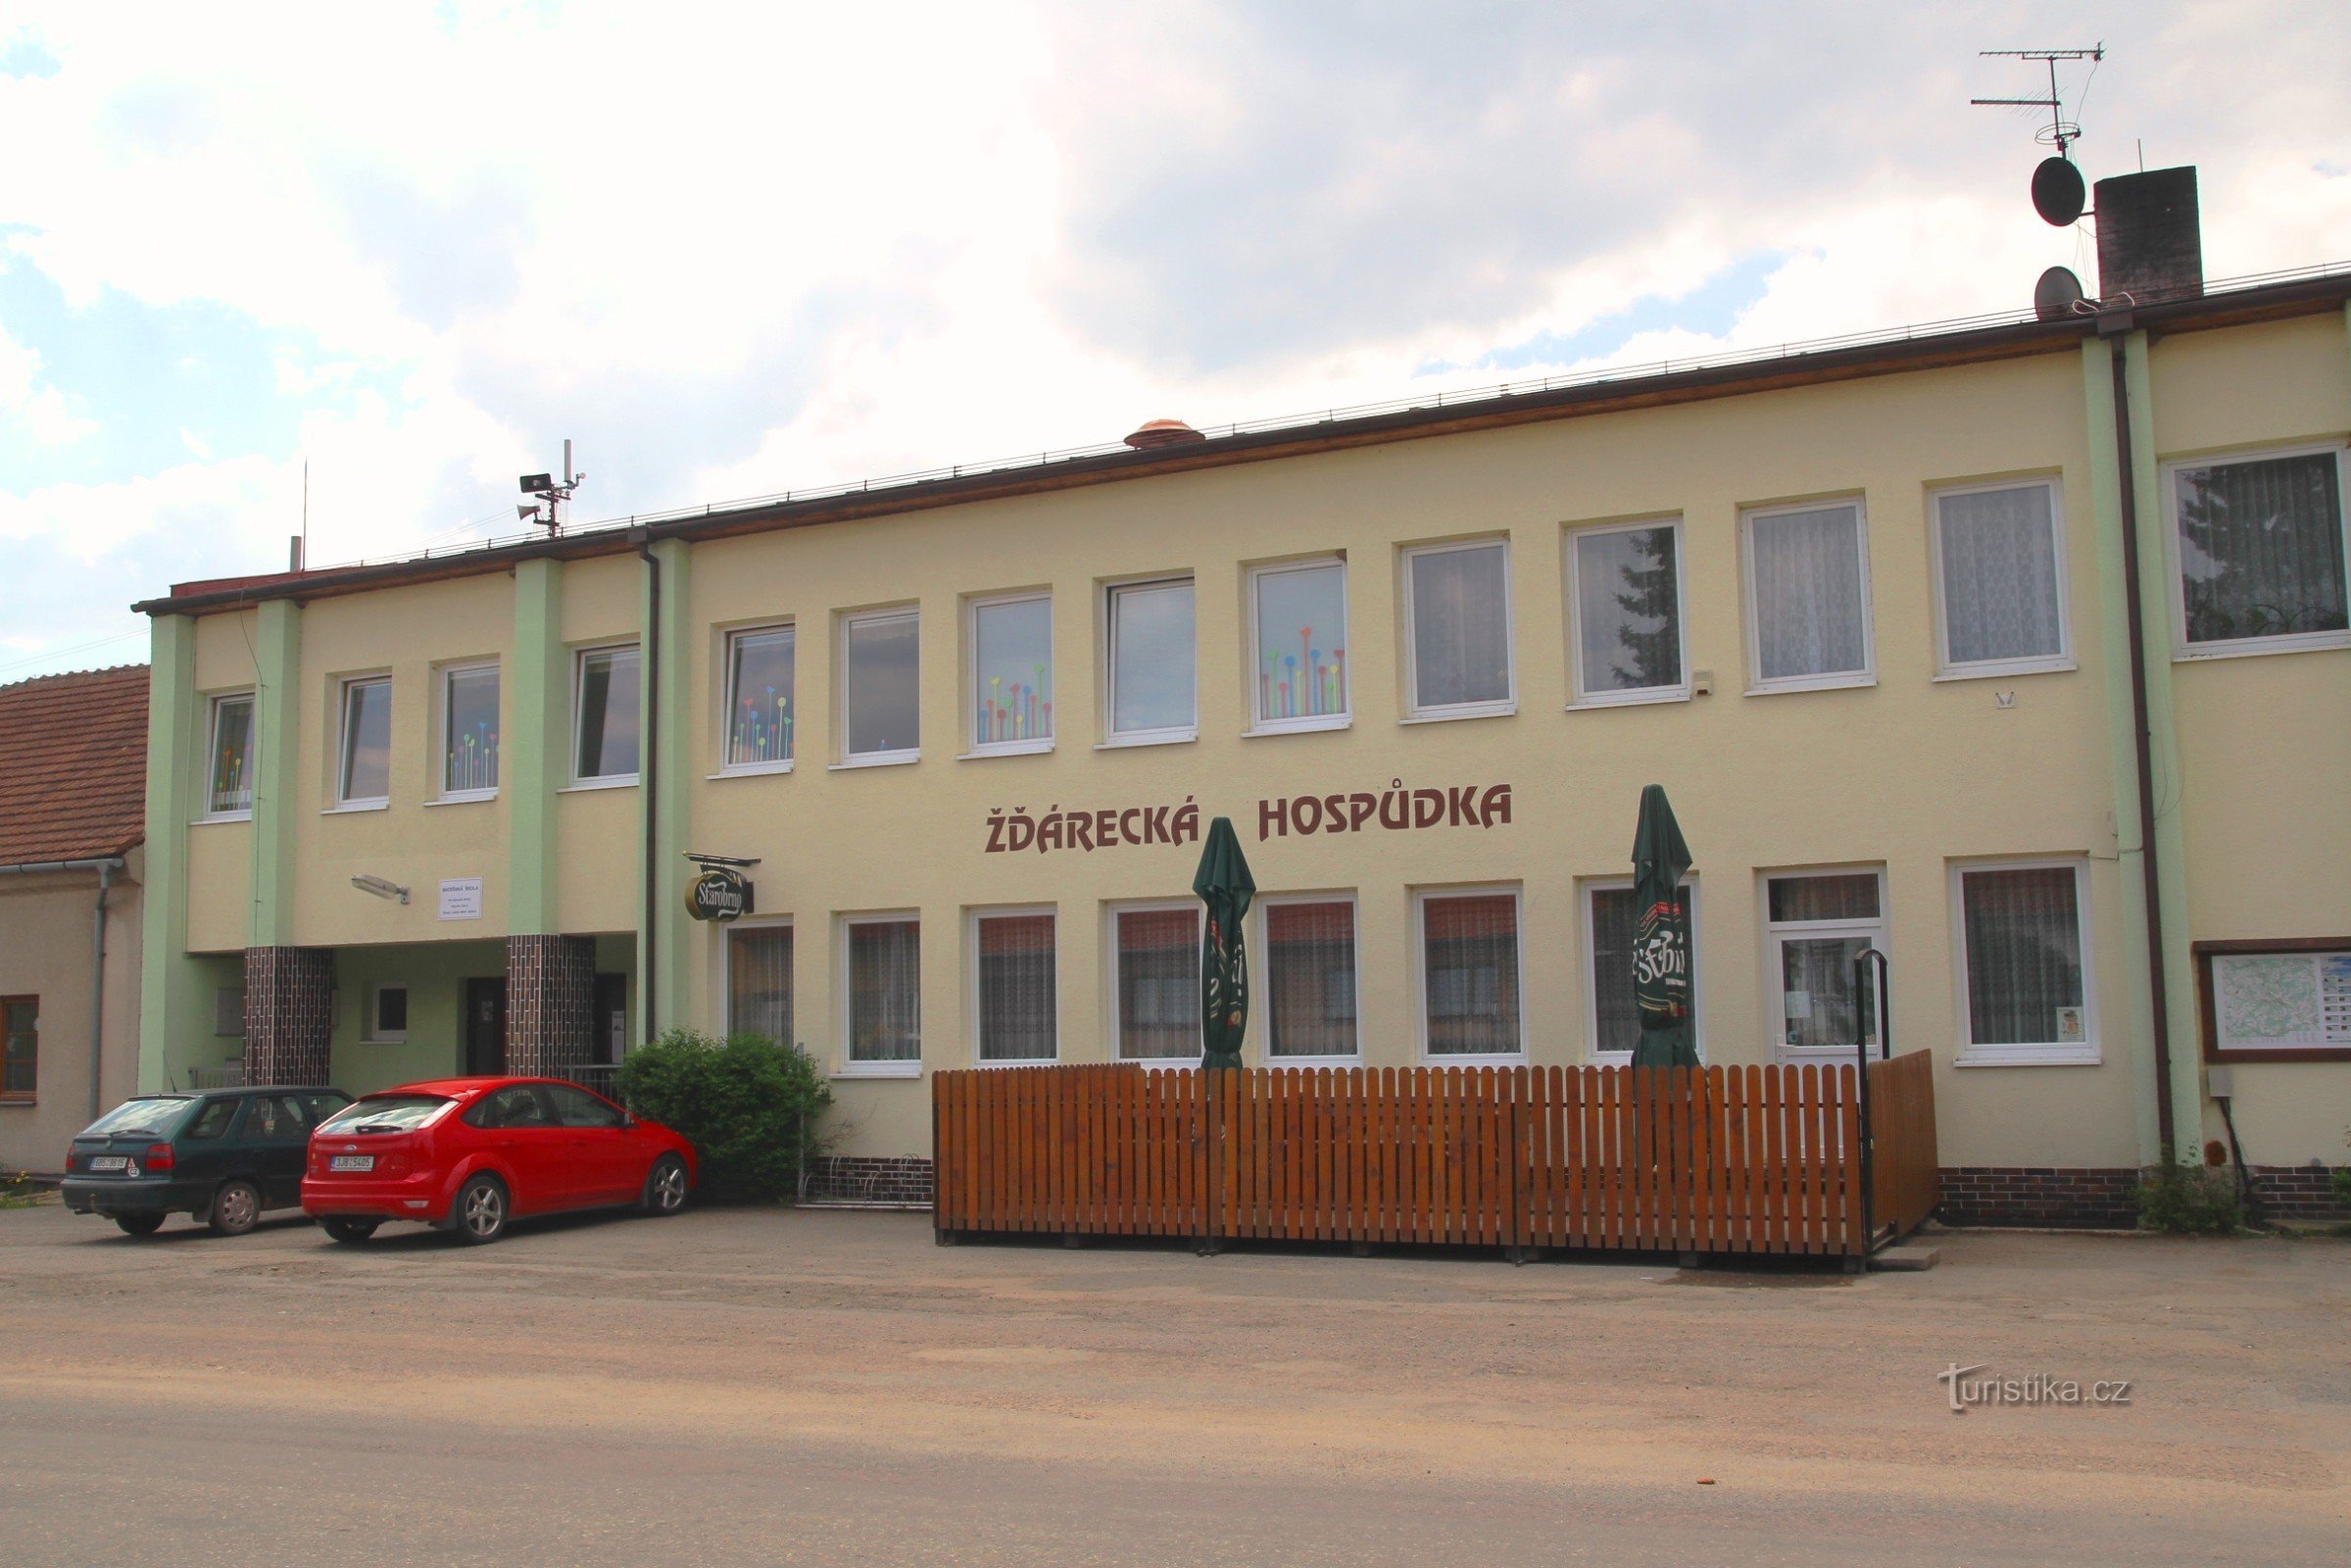 Pubul Žďárecká este situat lângă stația de autobuz